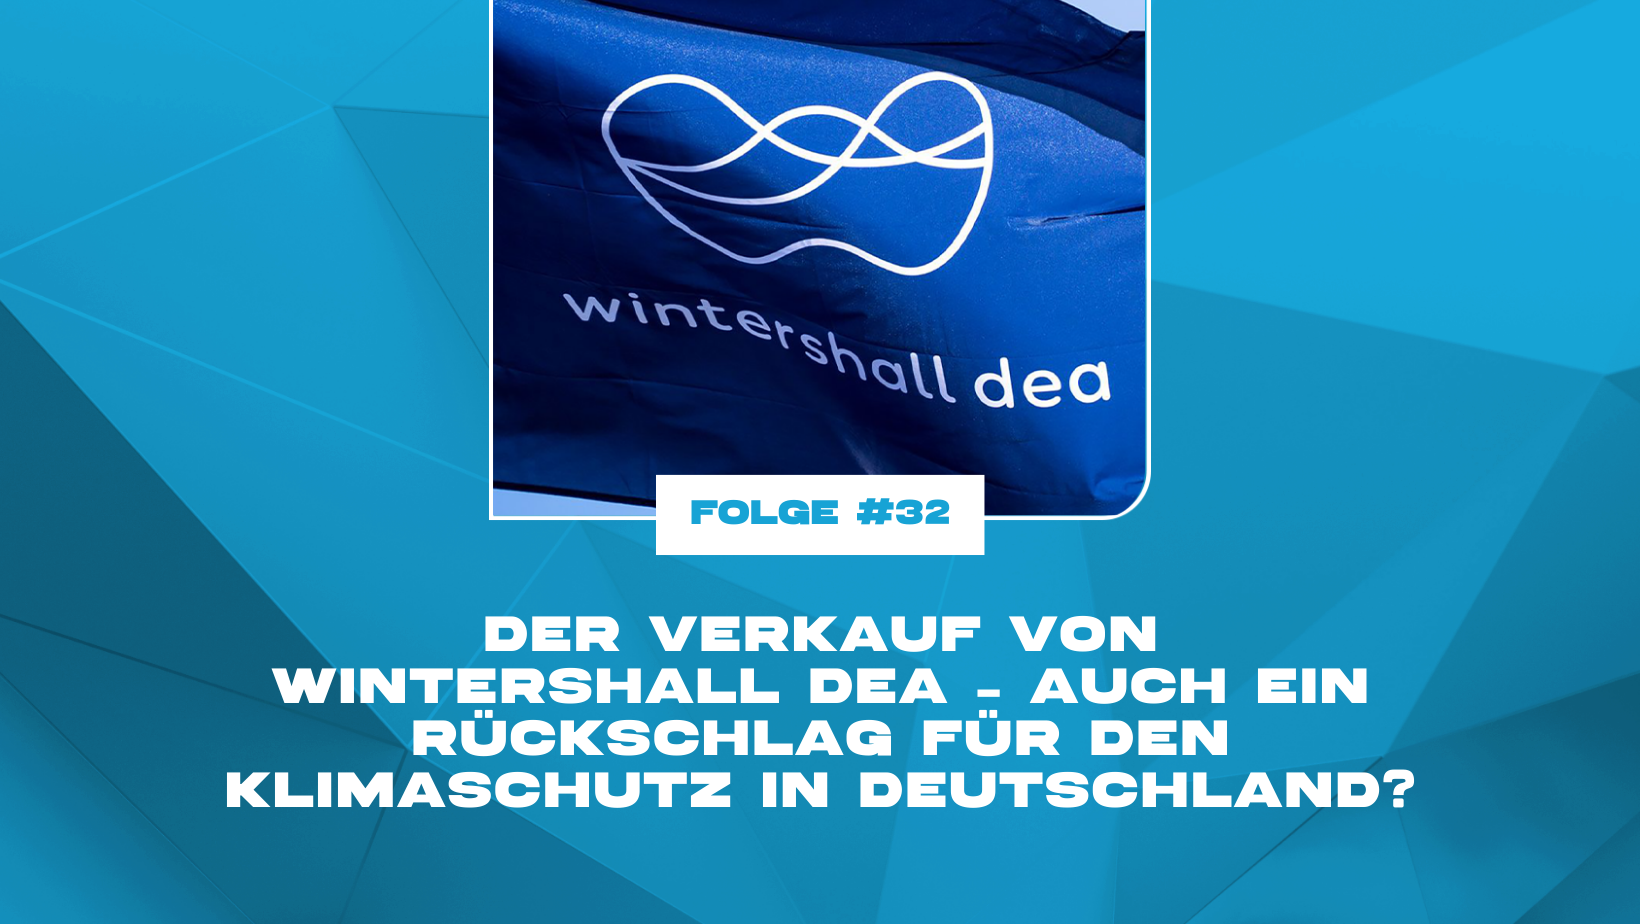 Der Verkauf von Wintershall Dea – auch ein Rückschlag für den Klimaschutz in Deutschland?